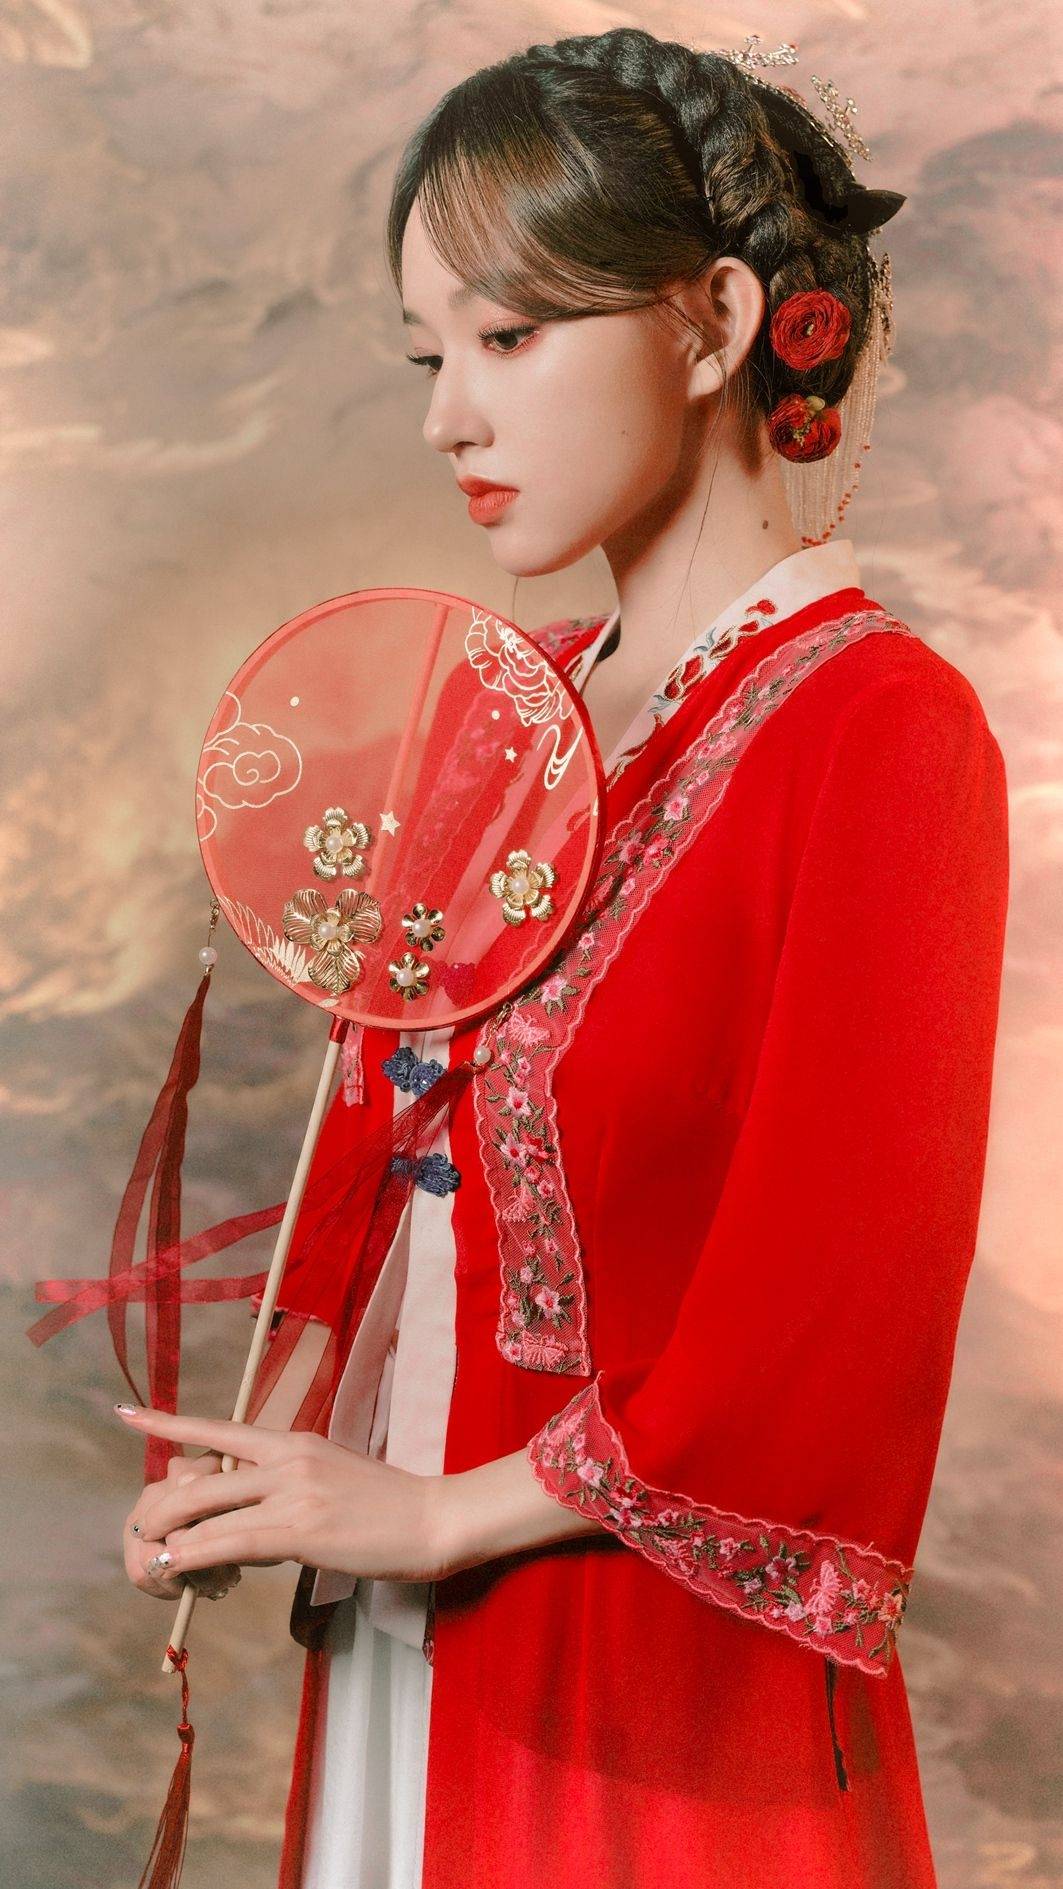 程潇红色纱衣仙气十足绝美写真